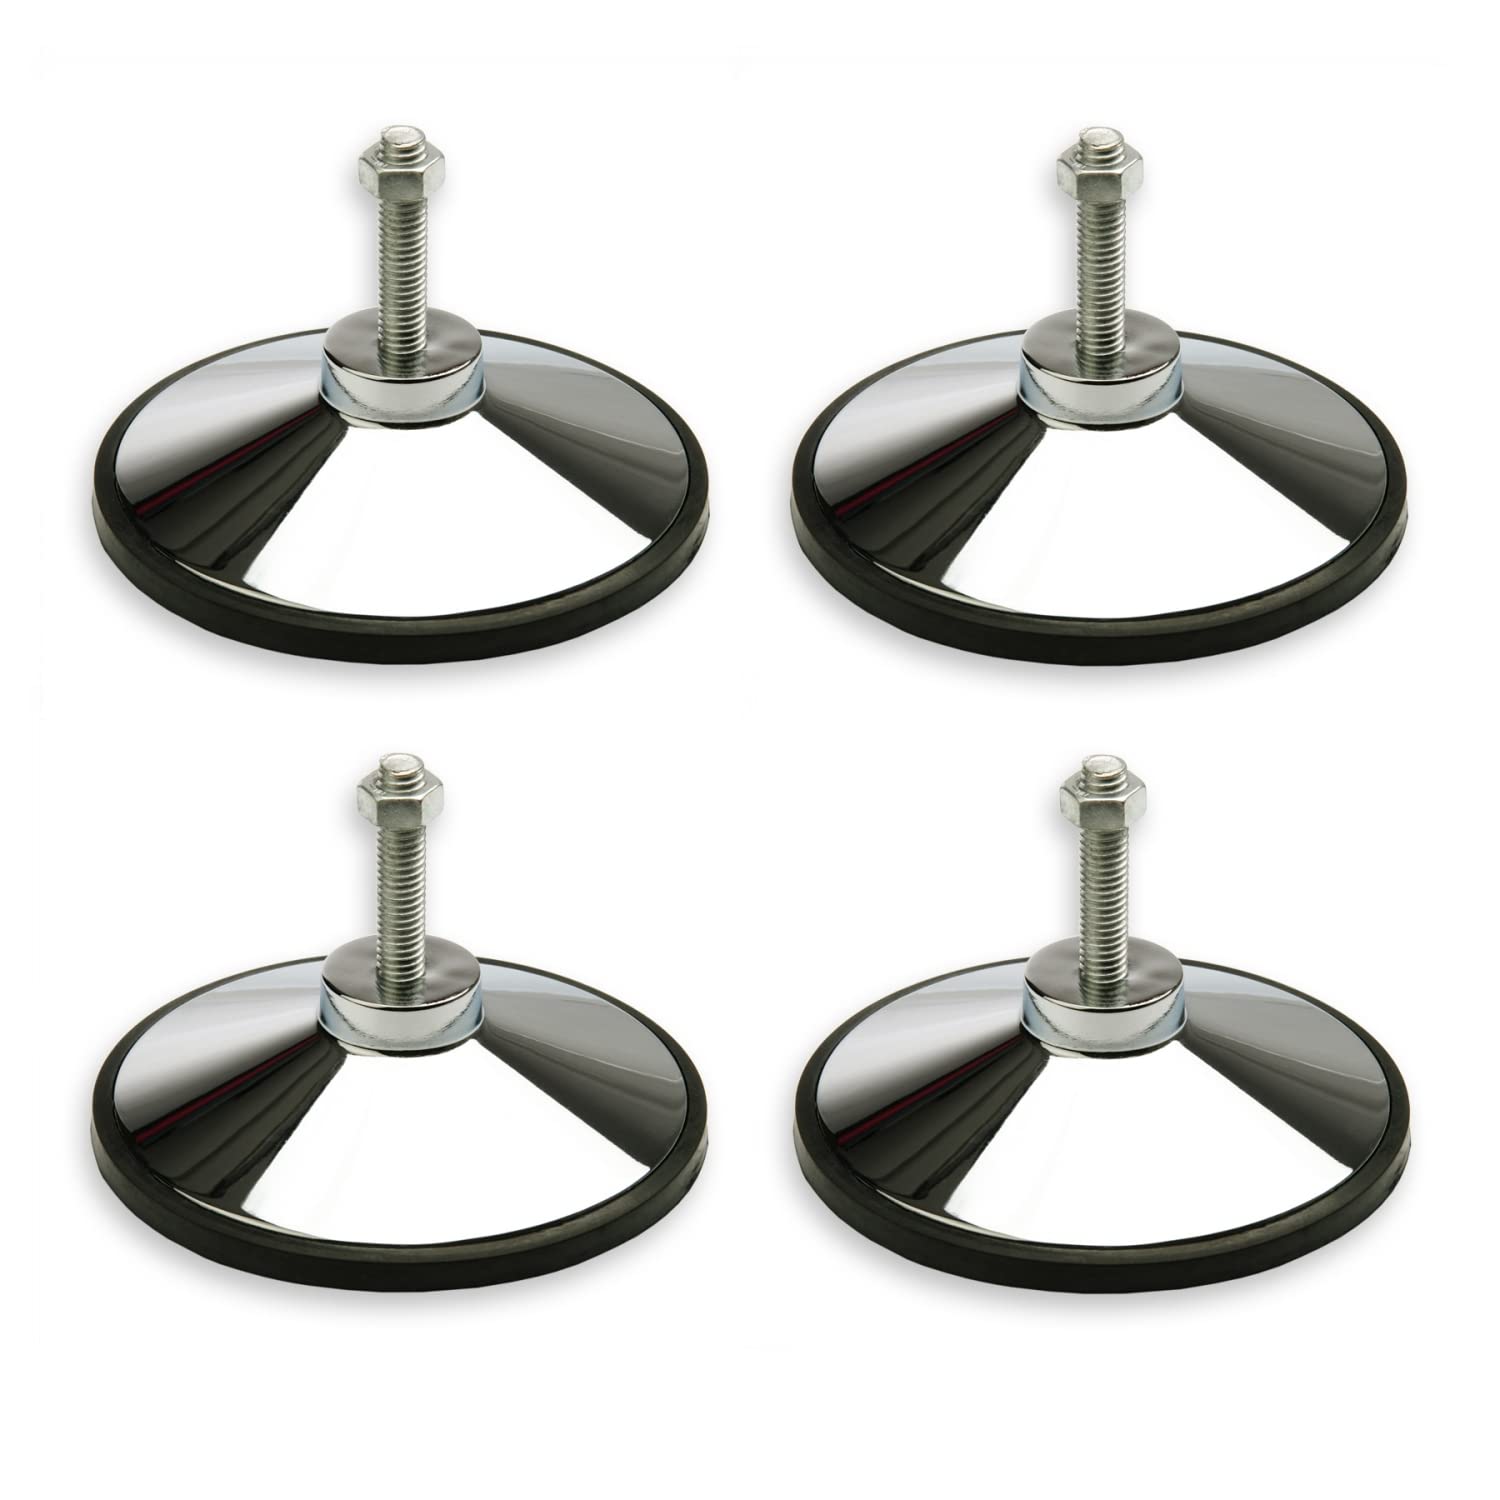 TUNIRO® 4 Stück Tischfussball Standfüße aus Metall, höhenverstellbar, verchromt, rutschfest gummiert, Gewinde M12, Kicker Tischkicker Füße